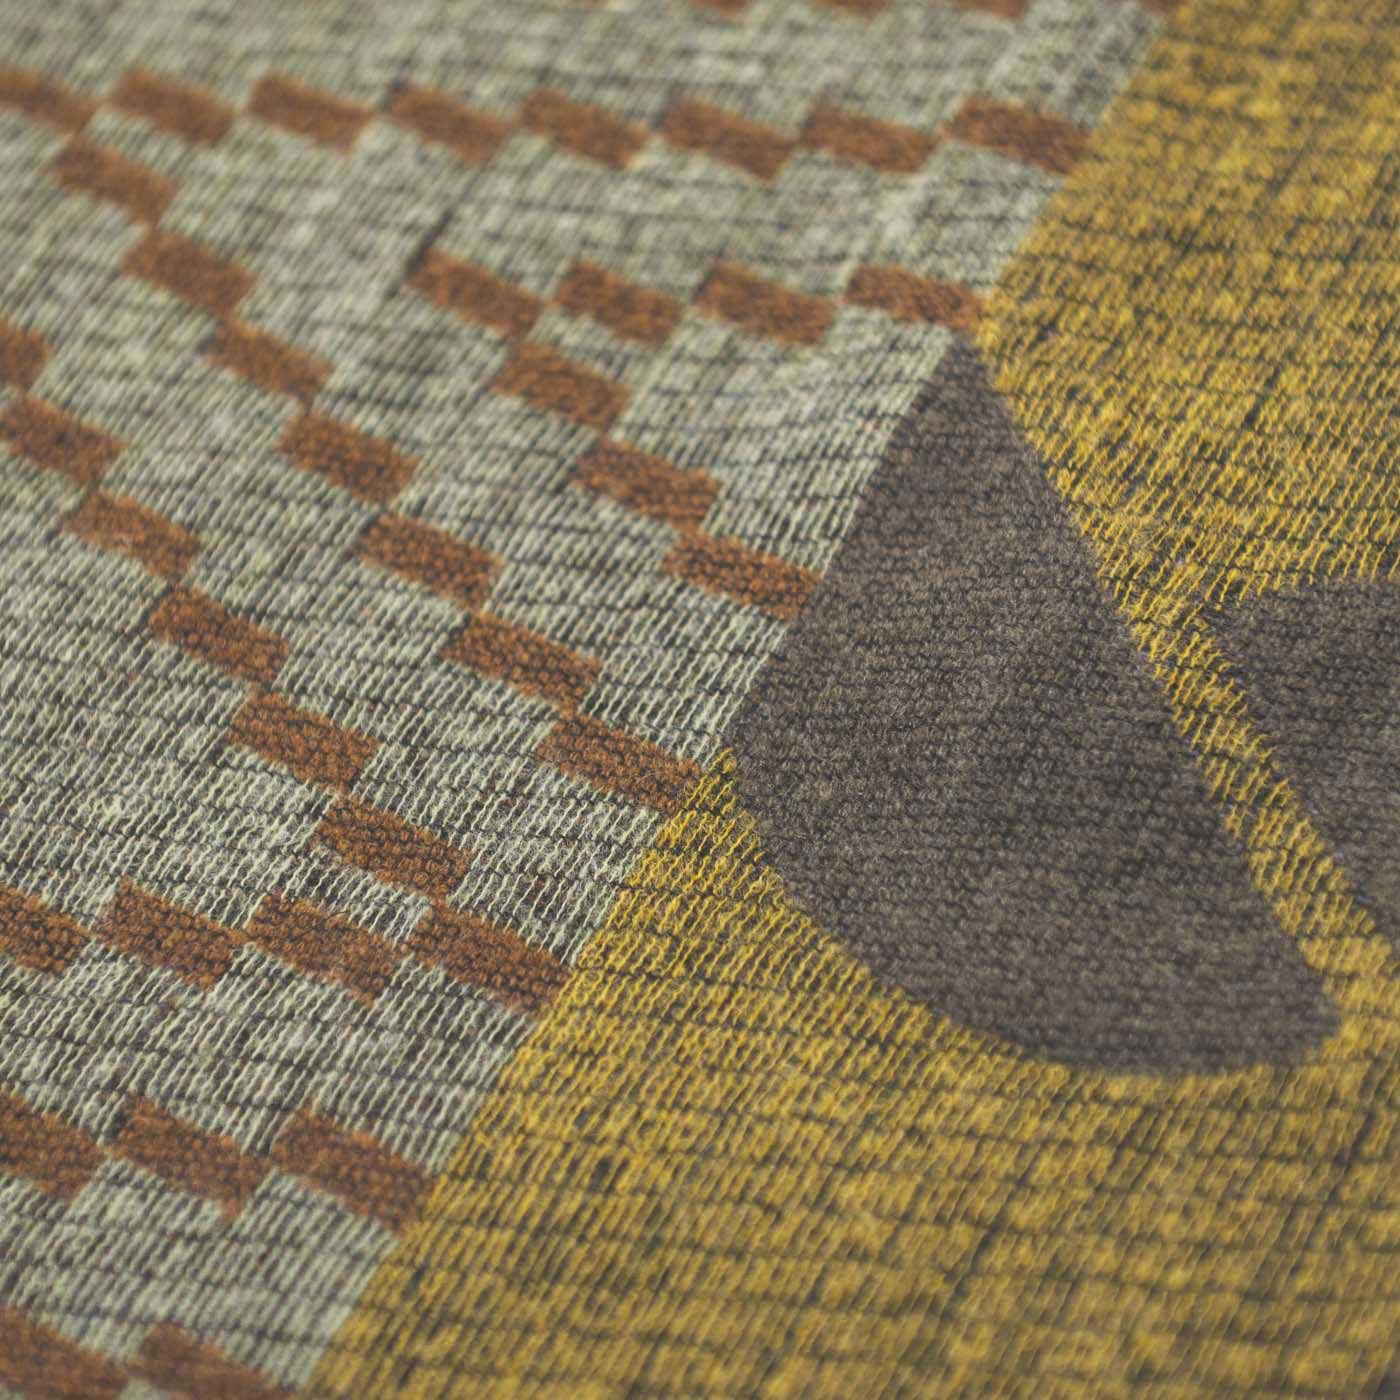 ＆Stories|テキスタイルデザイナーと作った 播州ジャカード織のブークレストール〈ライラック色〉|さまざまな糸が織りなすコンピュータージャカード織の複雑なデザインです。